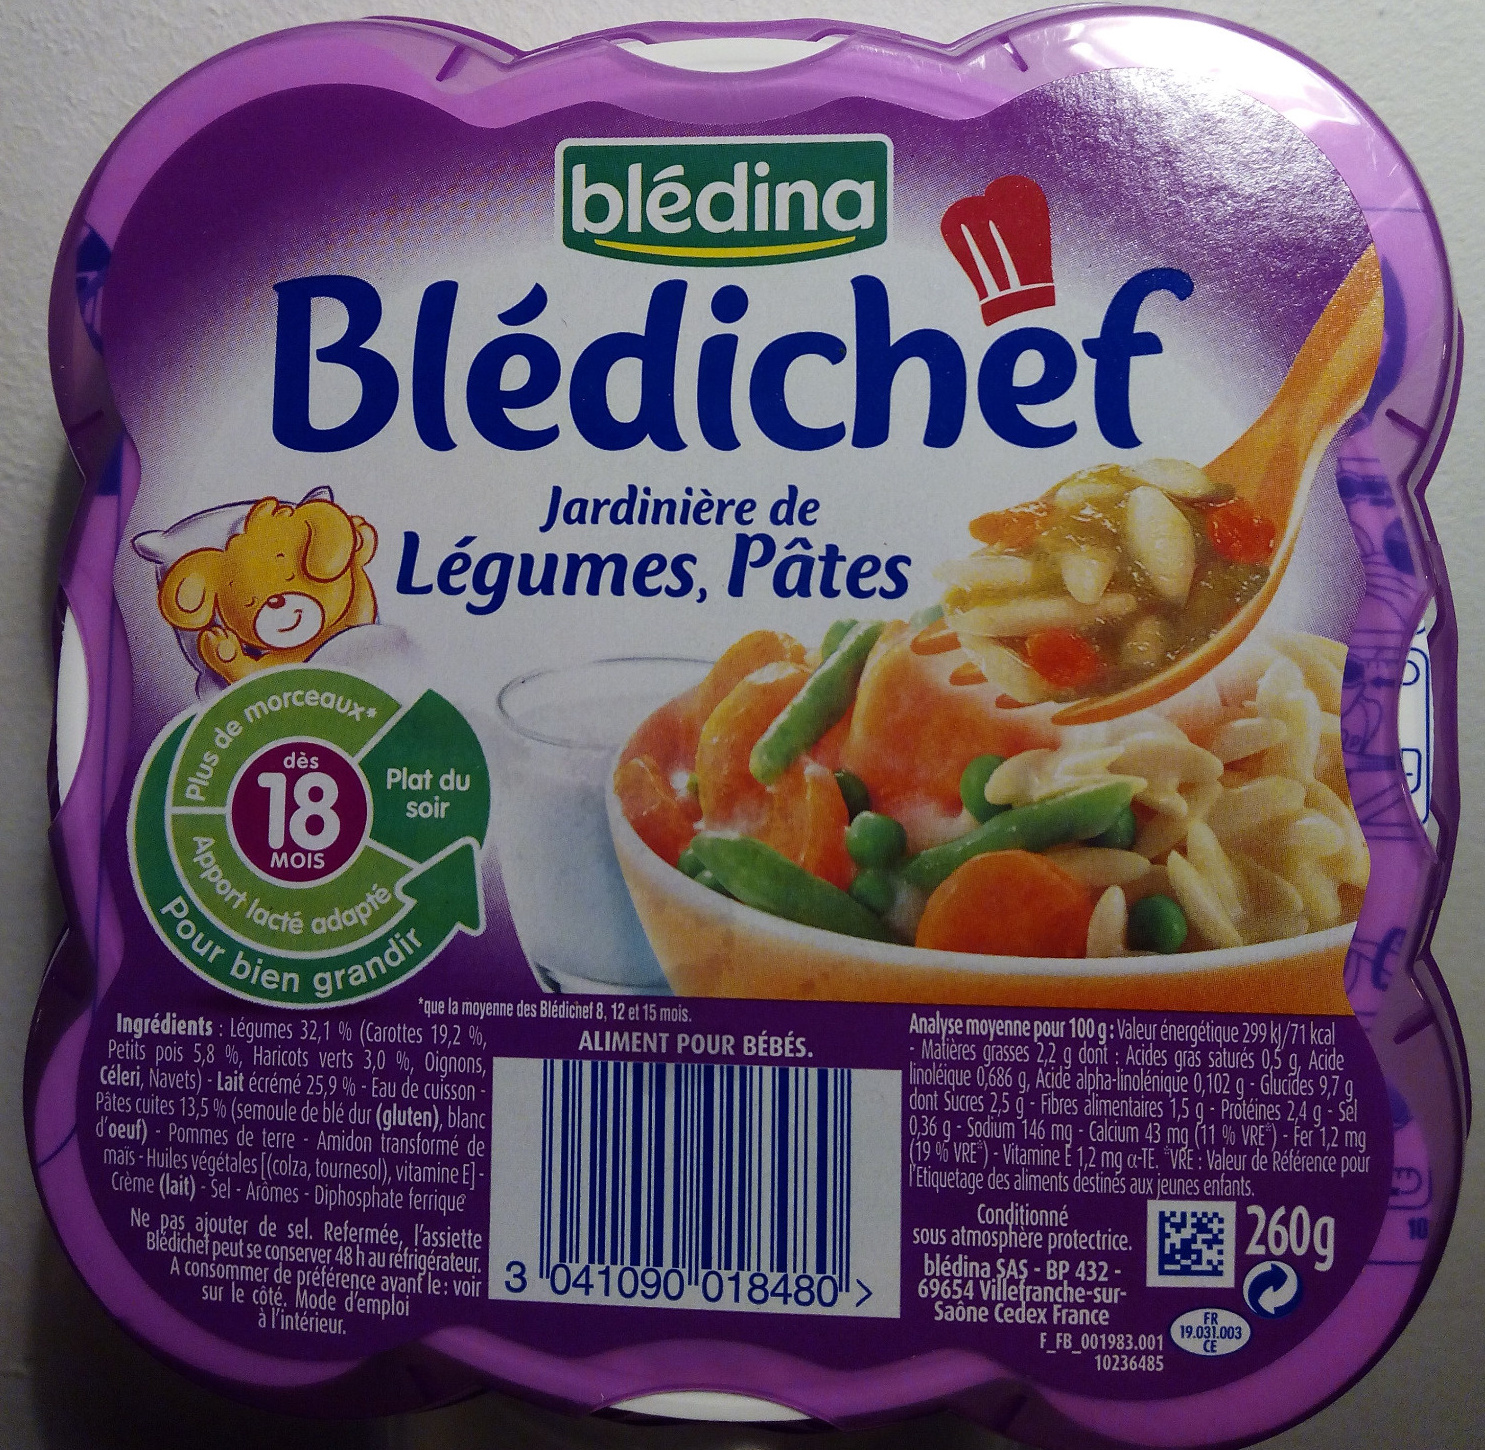 Blédichef - Jardinière de Légumes, Pâtes - Produit